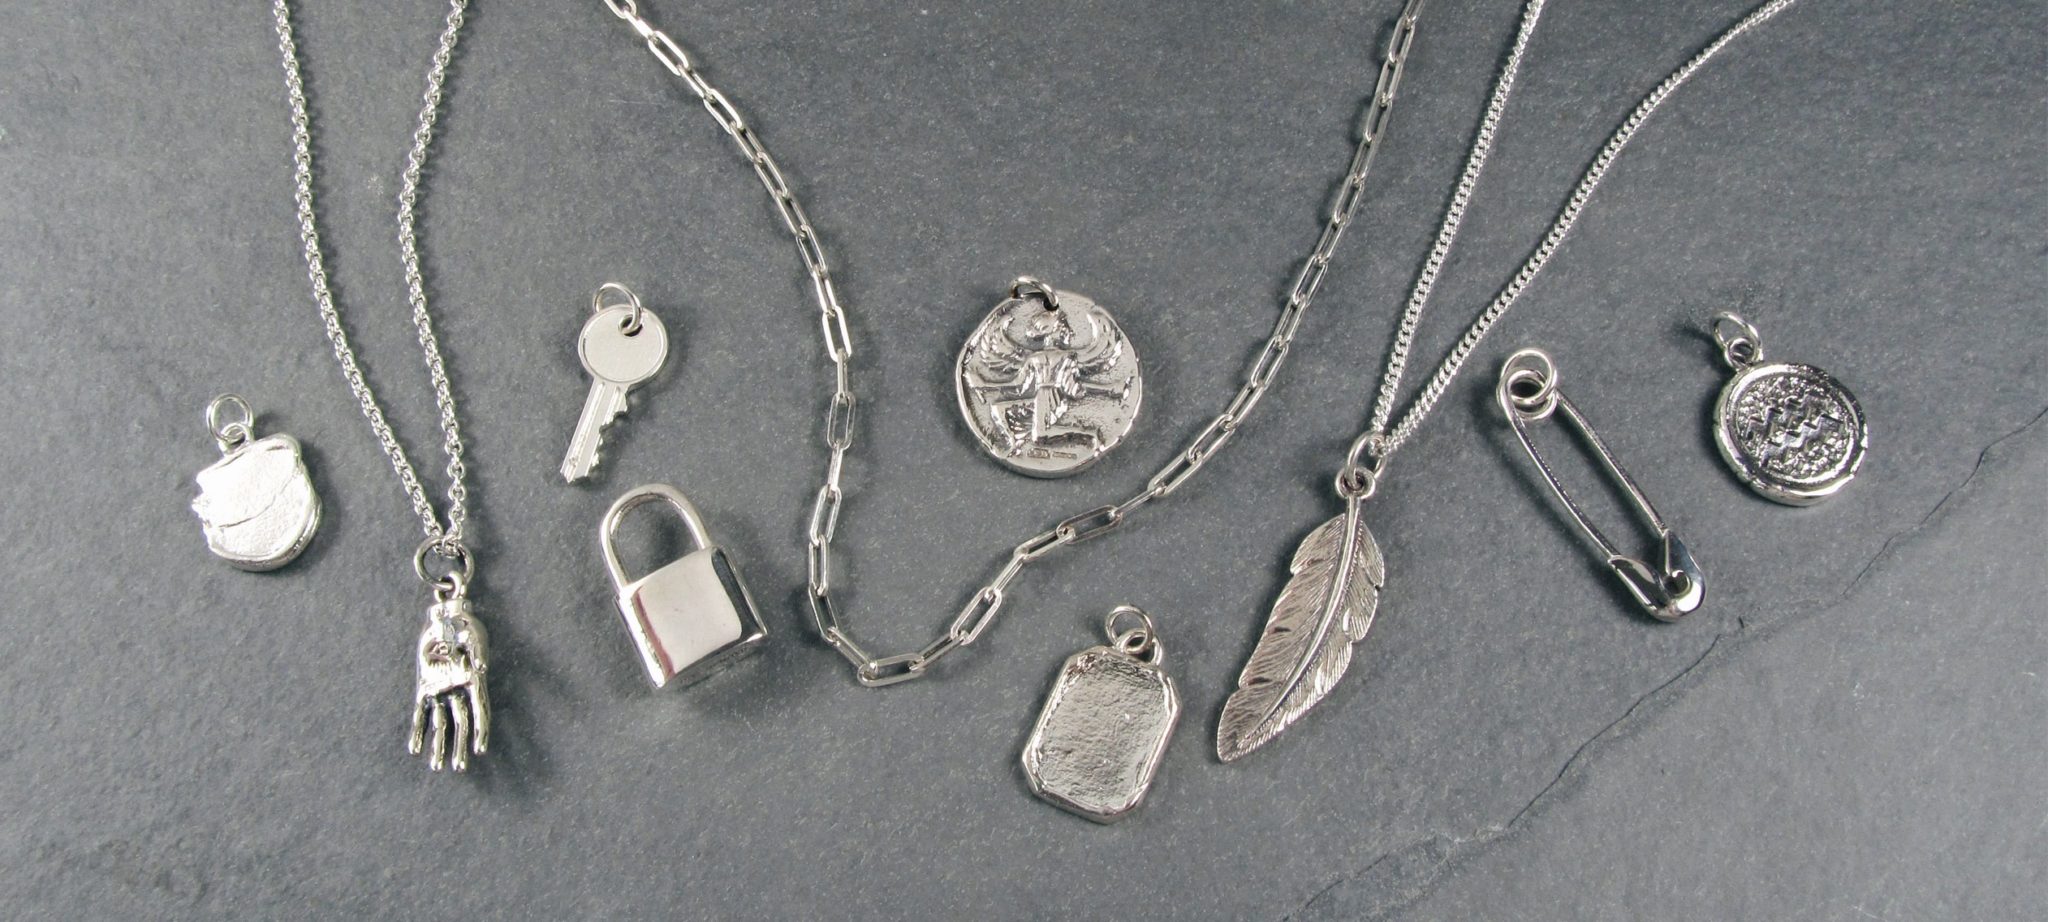 98D7EA49-91FE-441A-93C4-46D7C200BA19-1 Round Miraculous Medal Necklace Silver